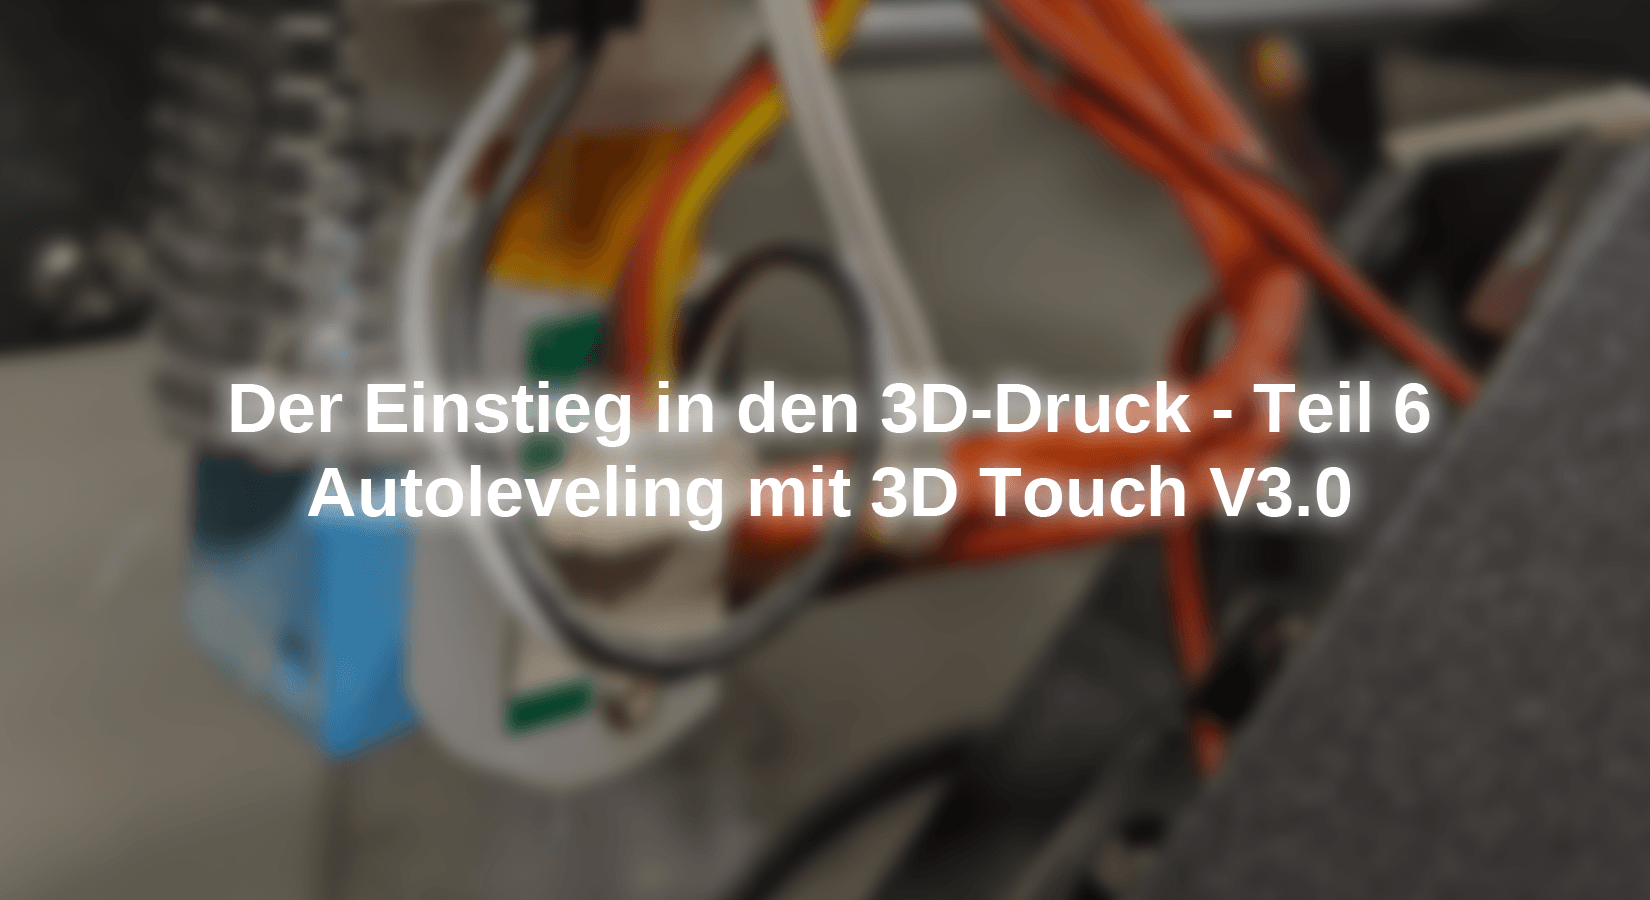 Der Einstieg in den 3D-Druck - Teil 6 - Autoleveling mit 3D Touch V3.0